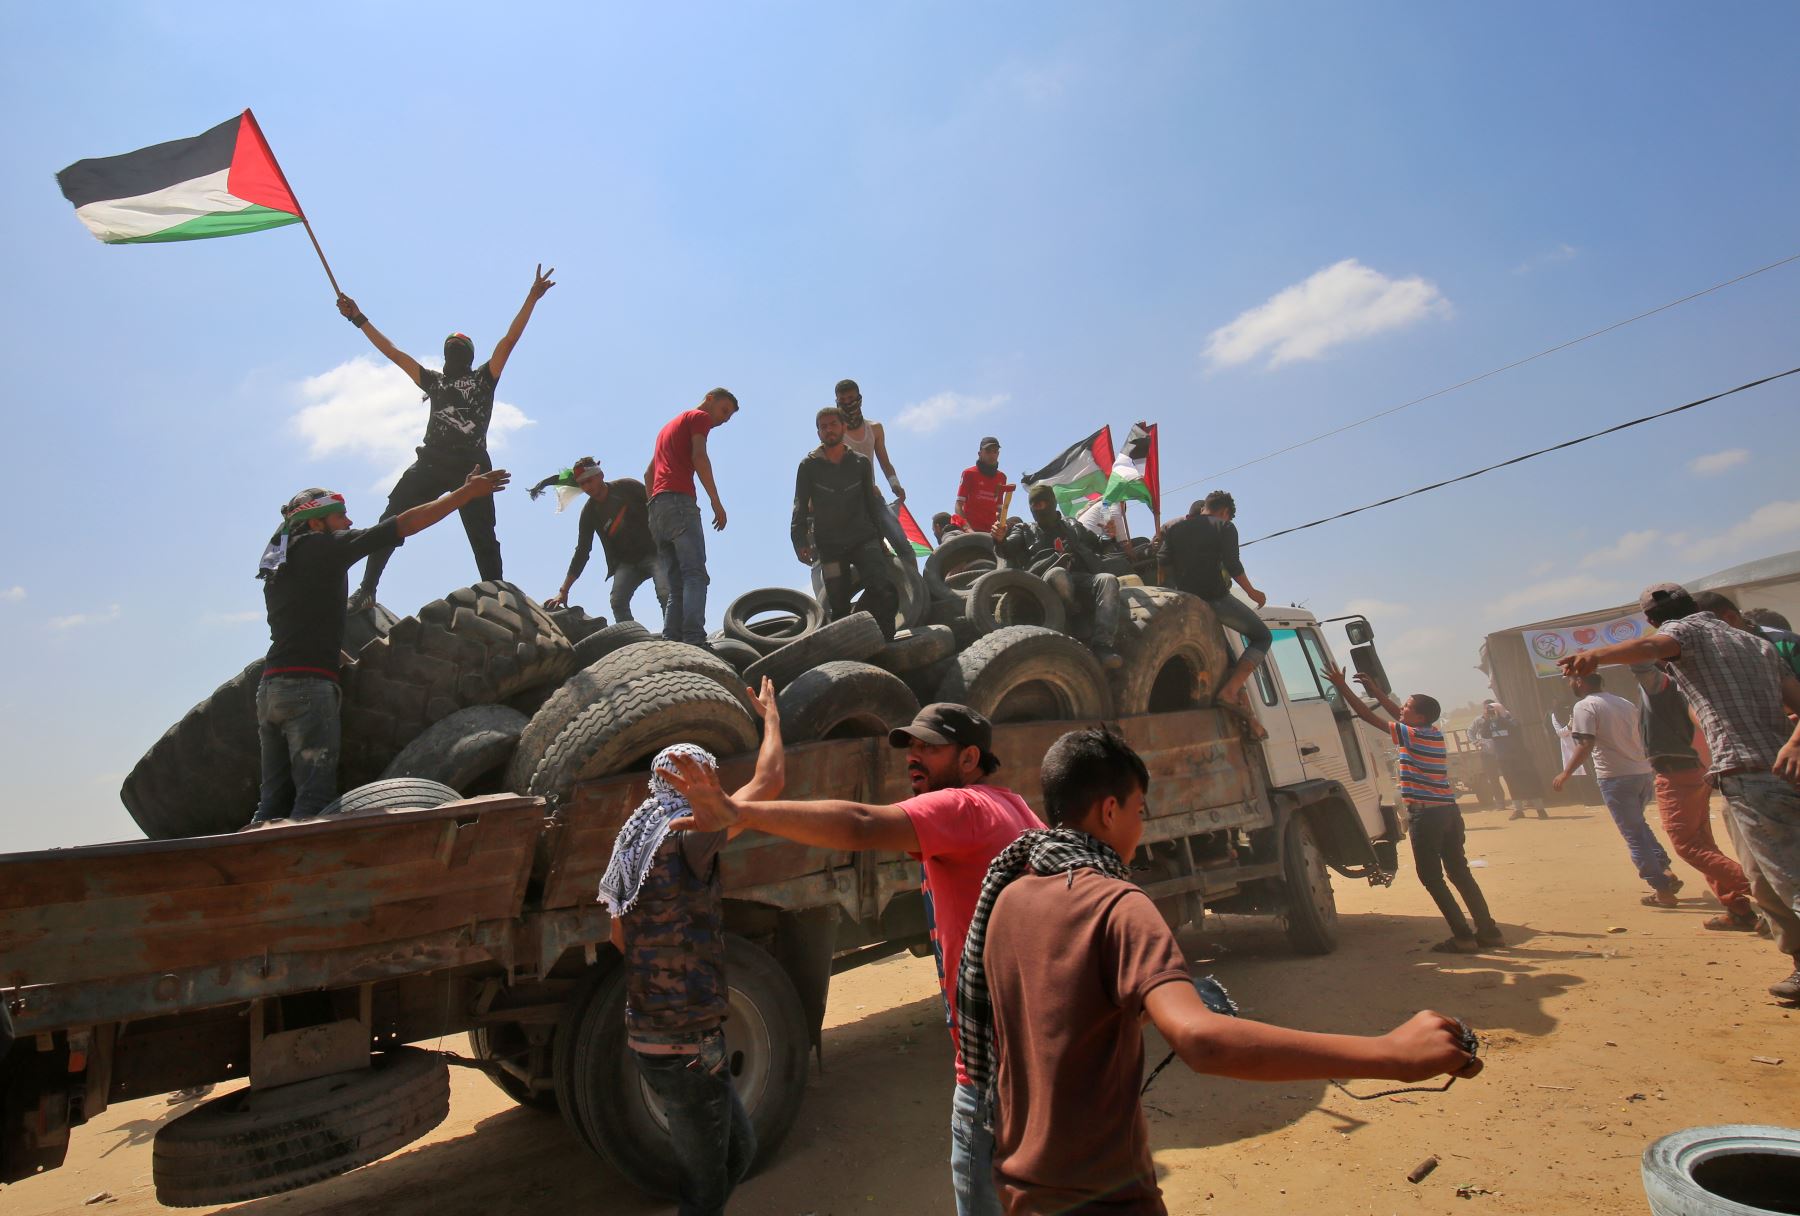 Un hombre enmascarado agita una bandera palestina mientras se para con otros en la parte trasera de un camión lleno de llantas que se quemaron durante las manifestaciones cerca de la frontera con Israel, al este de Khan Yunis en el sur de la Franja de Gaza. AFP